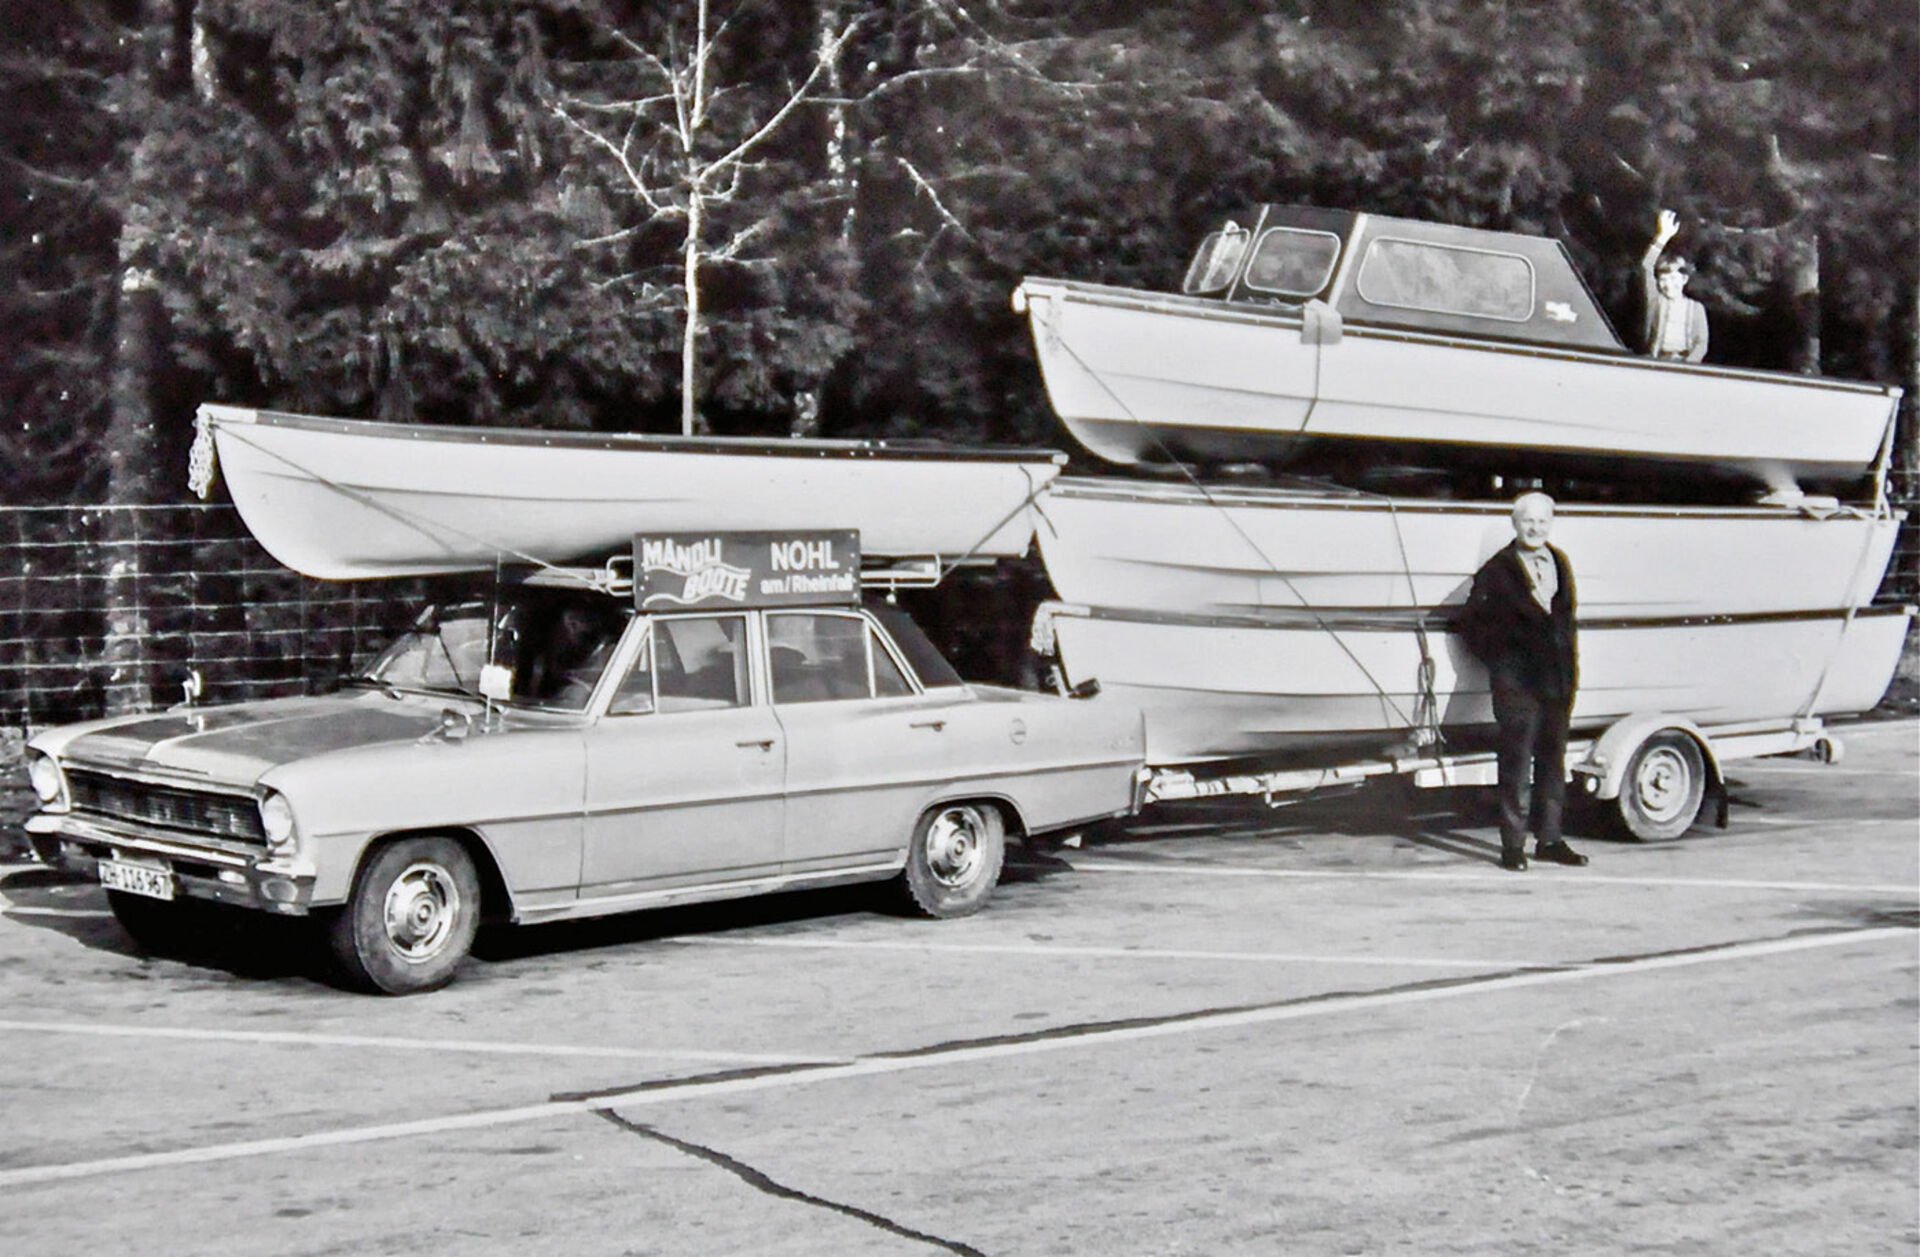  Die Auslieferung der Boote ist jeweils ein abwechslungsreicher Reisetag zu den Kunden an den verschiedenen Schweizer Seen, 1964 noch mit abenteuerlichem Gefährt.  